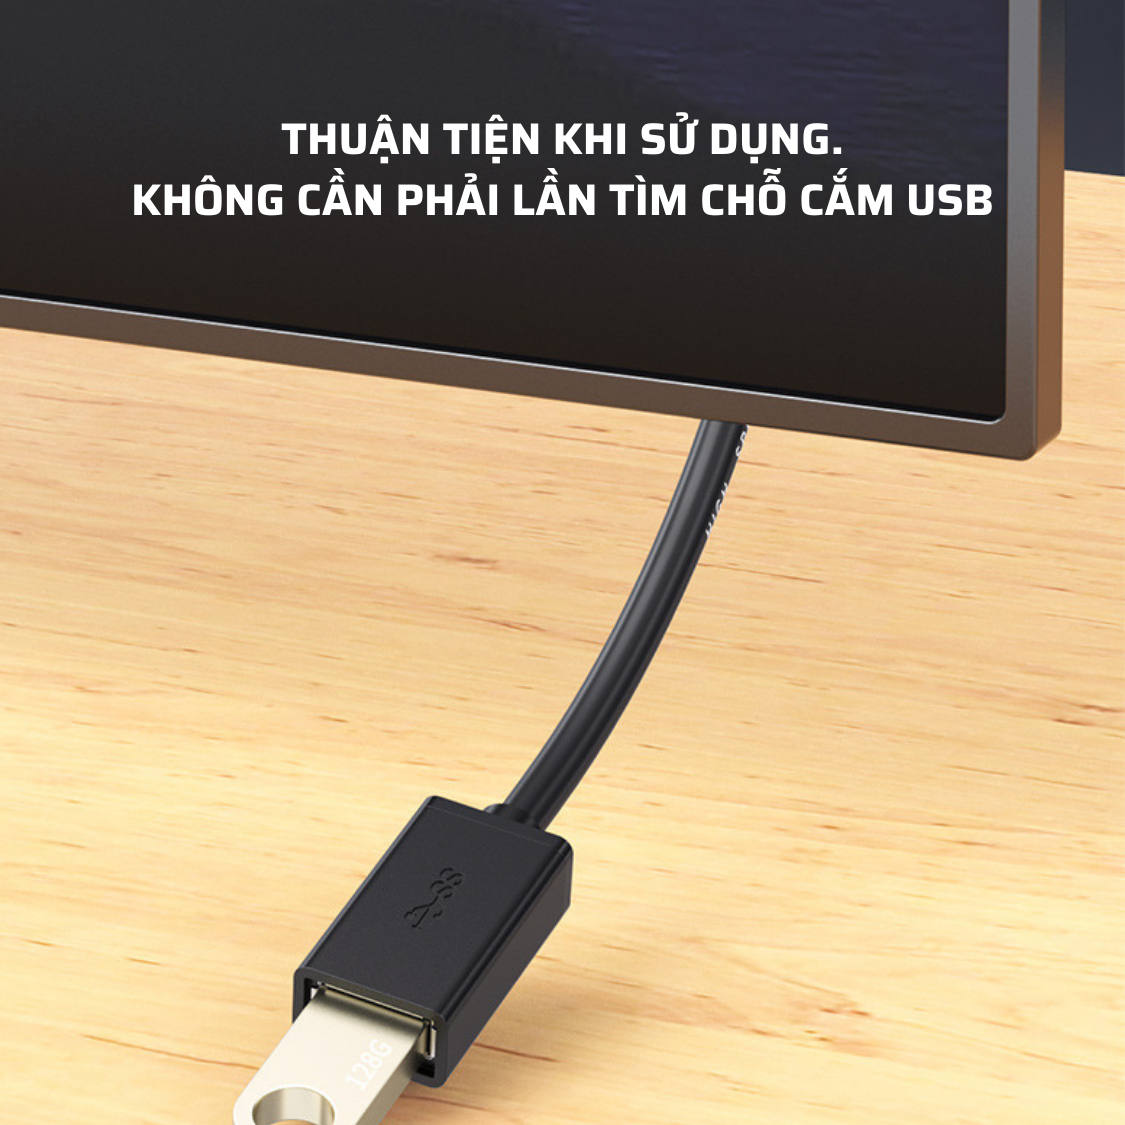 Hình ảnh Dây Cáp Nối Dài USB 3.0 Dài 2M  - Hàng Chính Hãng Tamayoko